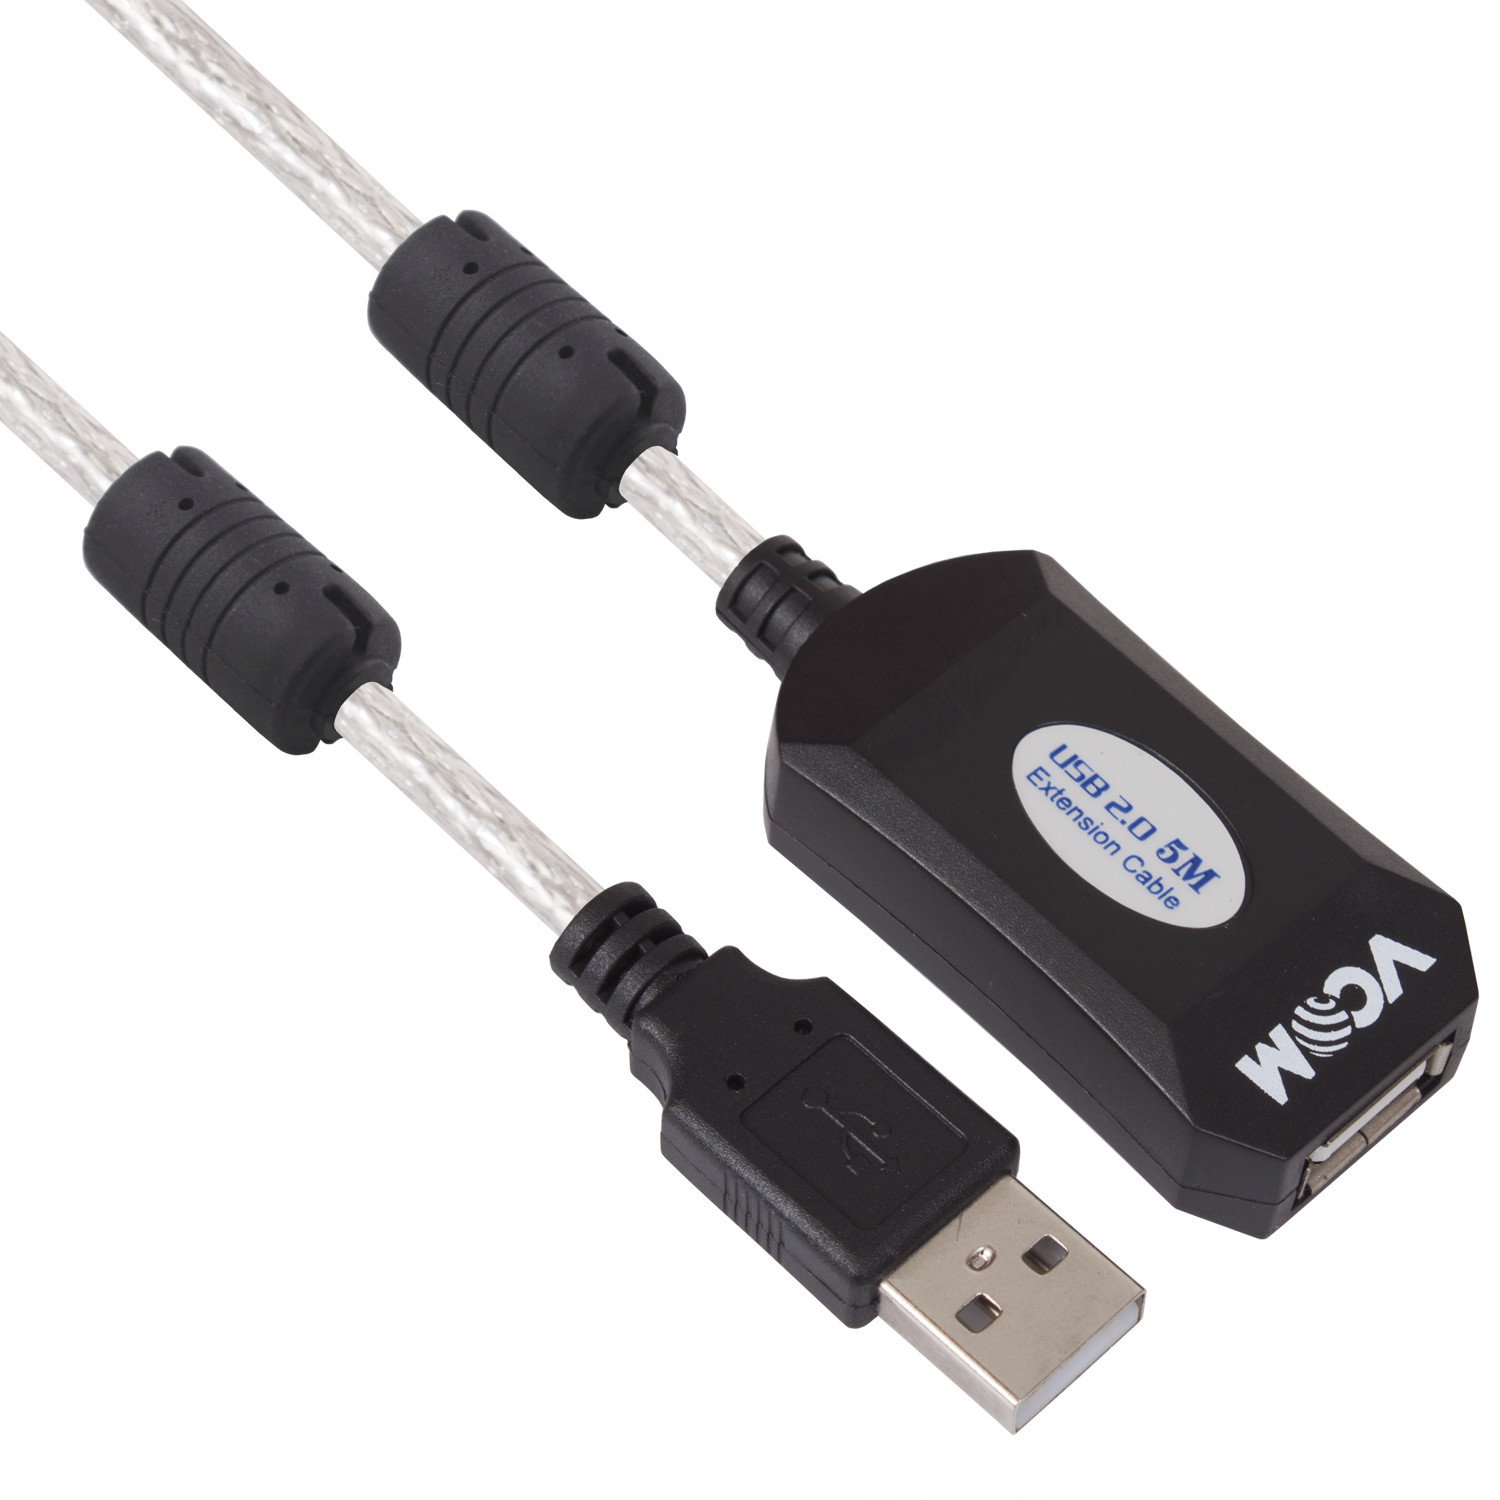 Mobilari PRZEDŁUŻACZ KABEL AKTYWNY USB 2.0 AM-AF 10 M M555016